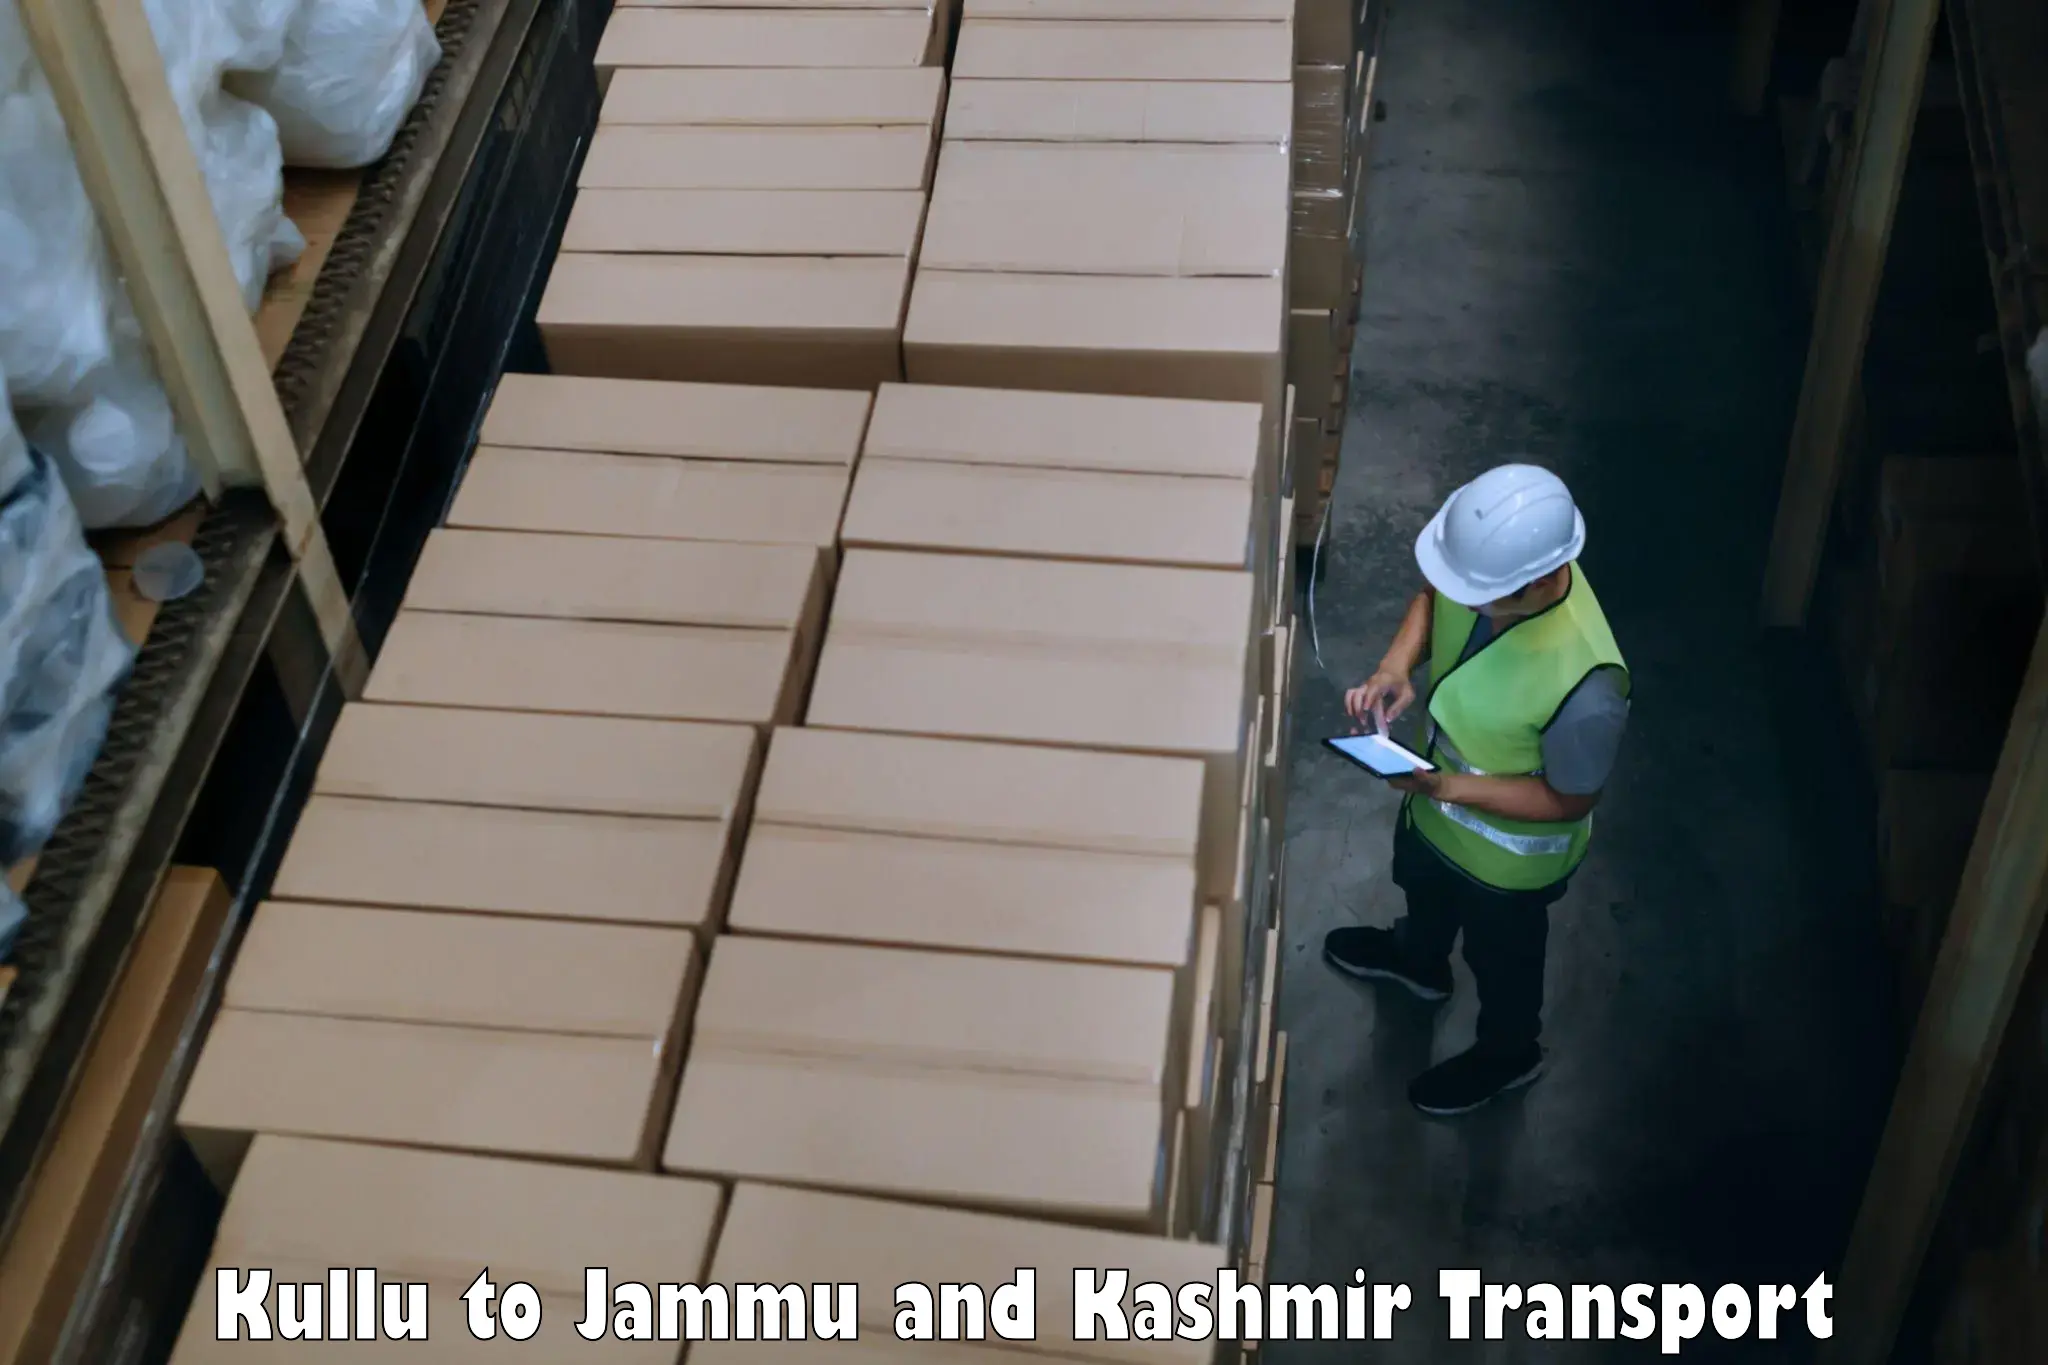 Two wheeler transport services Kullu to Rajouri